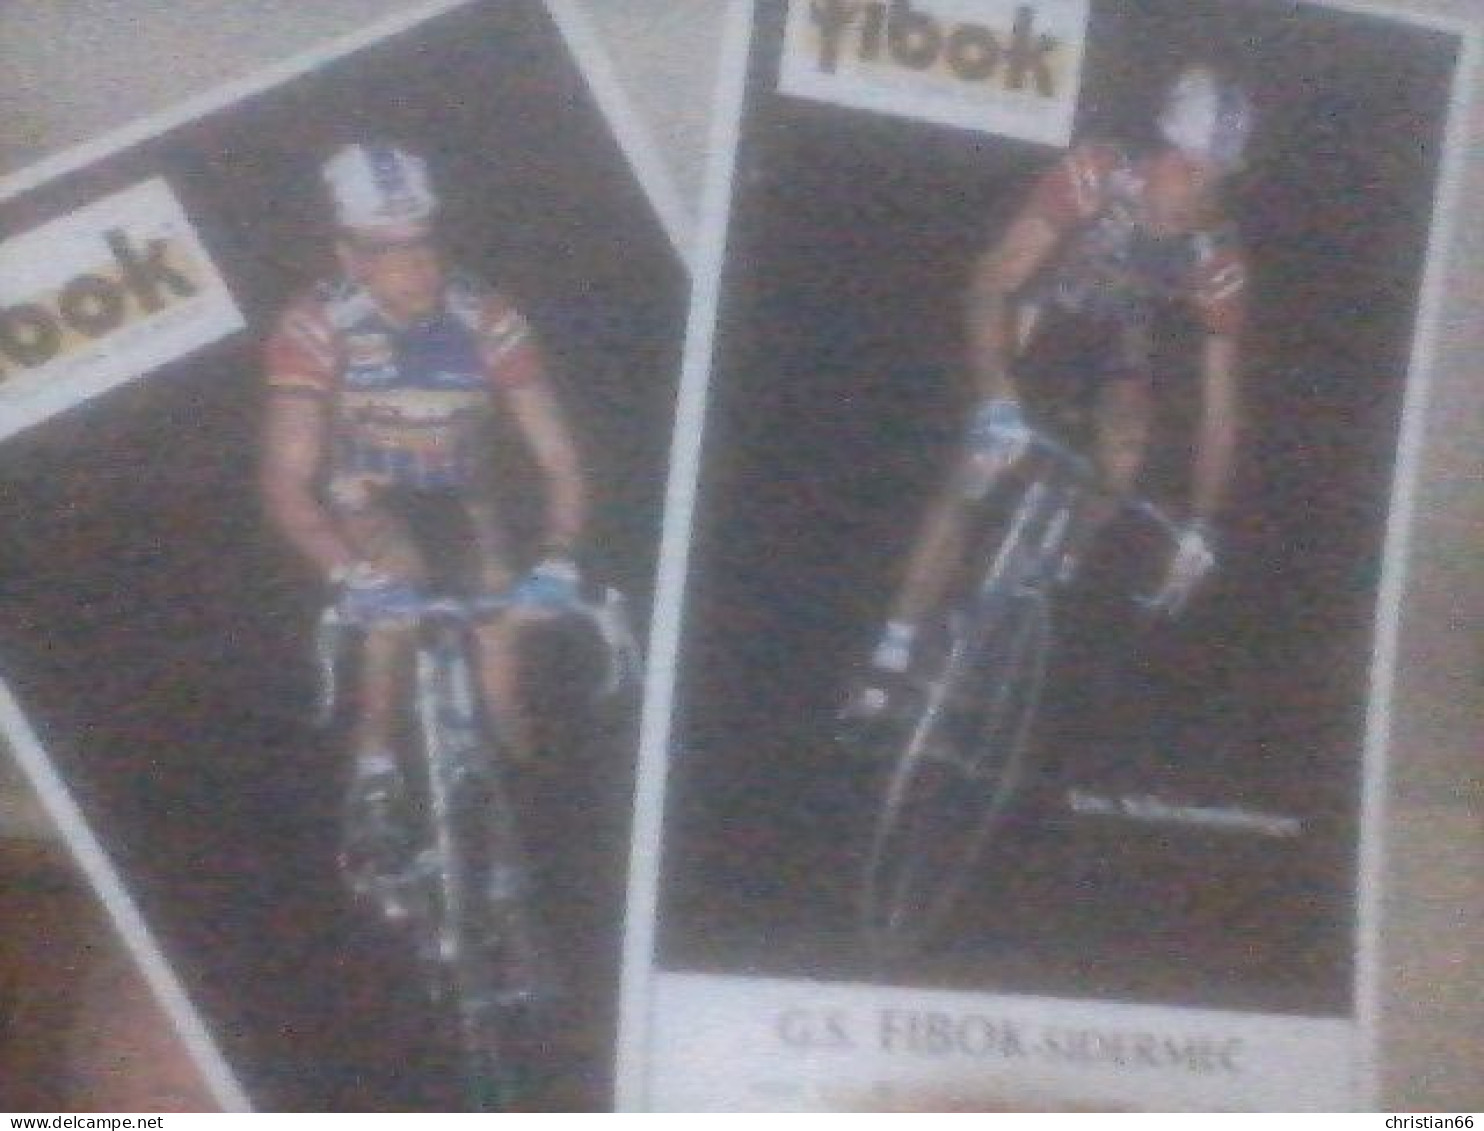 CYCLISME  - WIELRENNEN- CICLISMO : 2 CARTES SCHOENENBERGER + HURLIMANN 1987 - Wielrennen